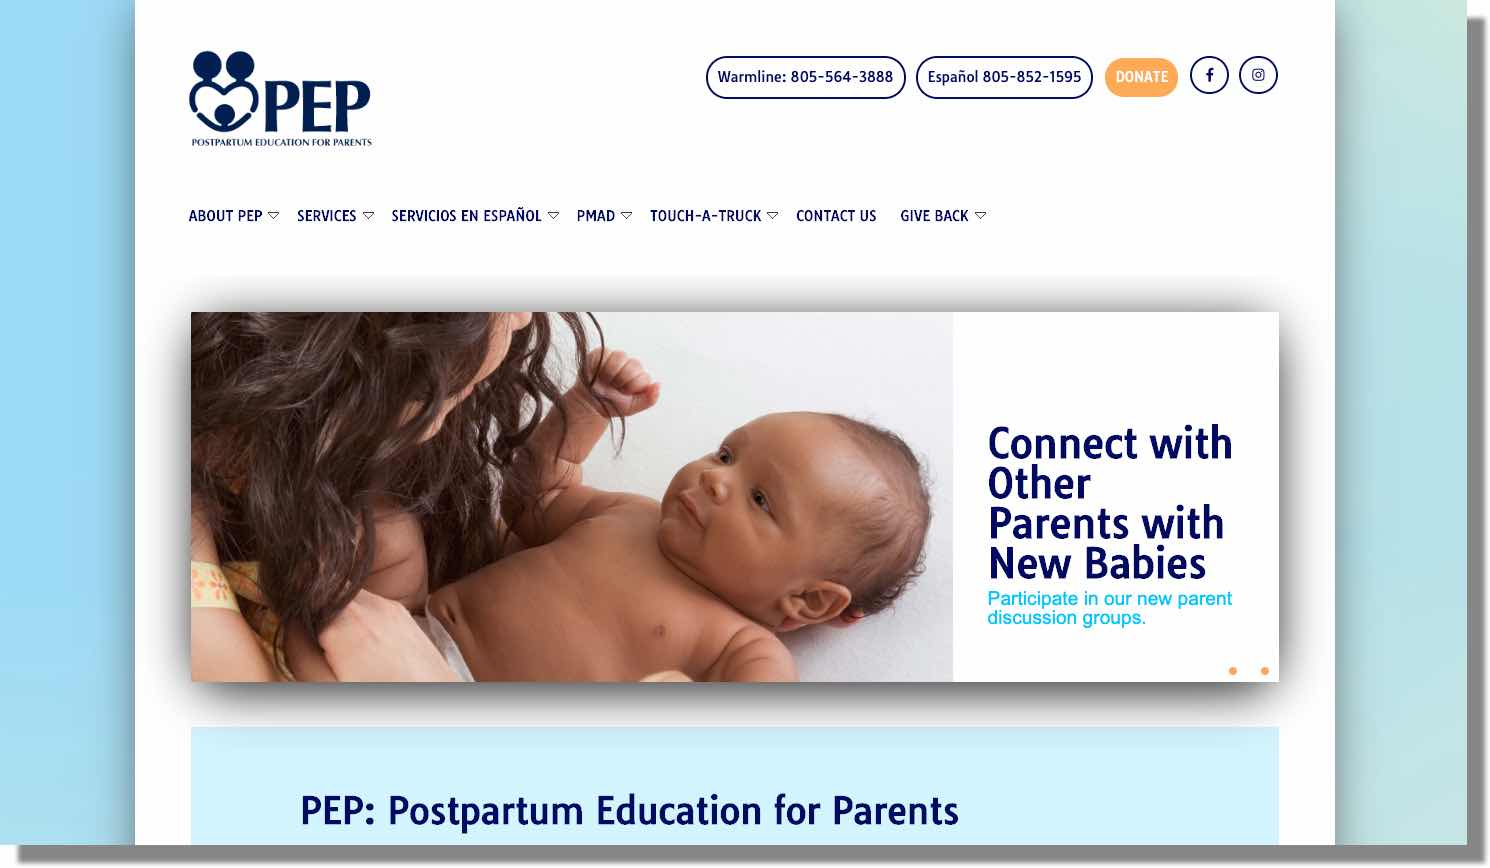 Postpartum Education for Parents (PEP)